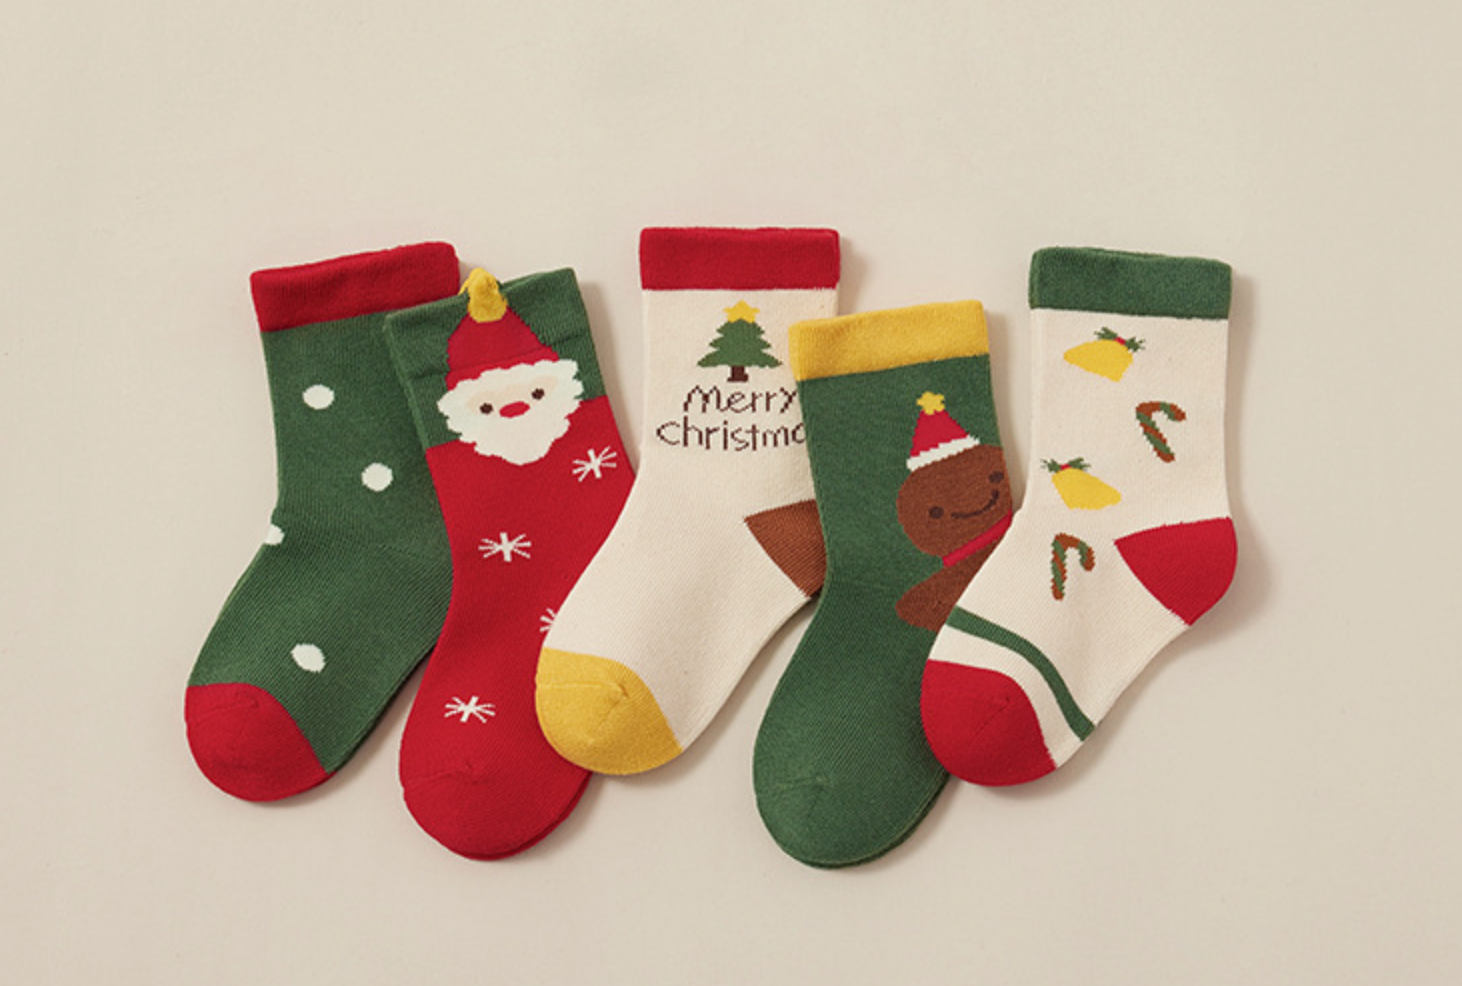 OEKO-TEX Certified Novelty Kids Christmas Socks 5 Pack (0-5 years)